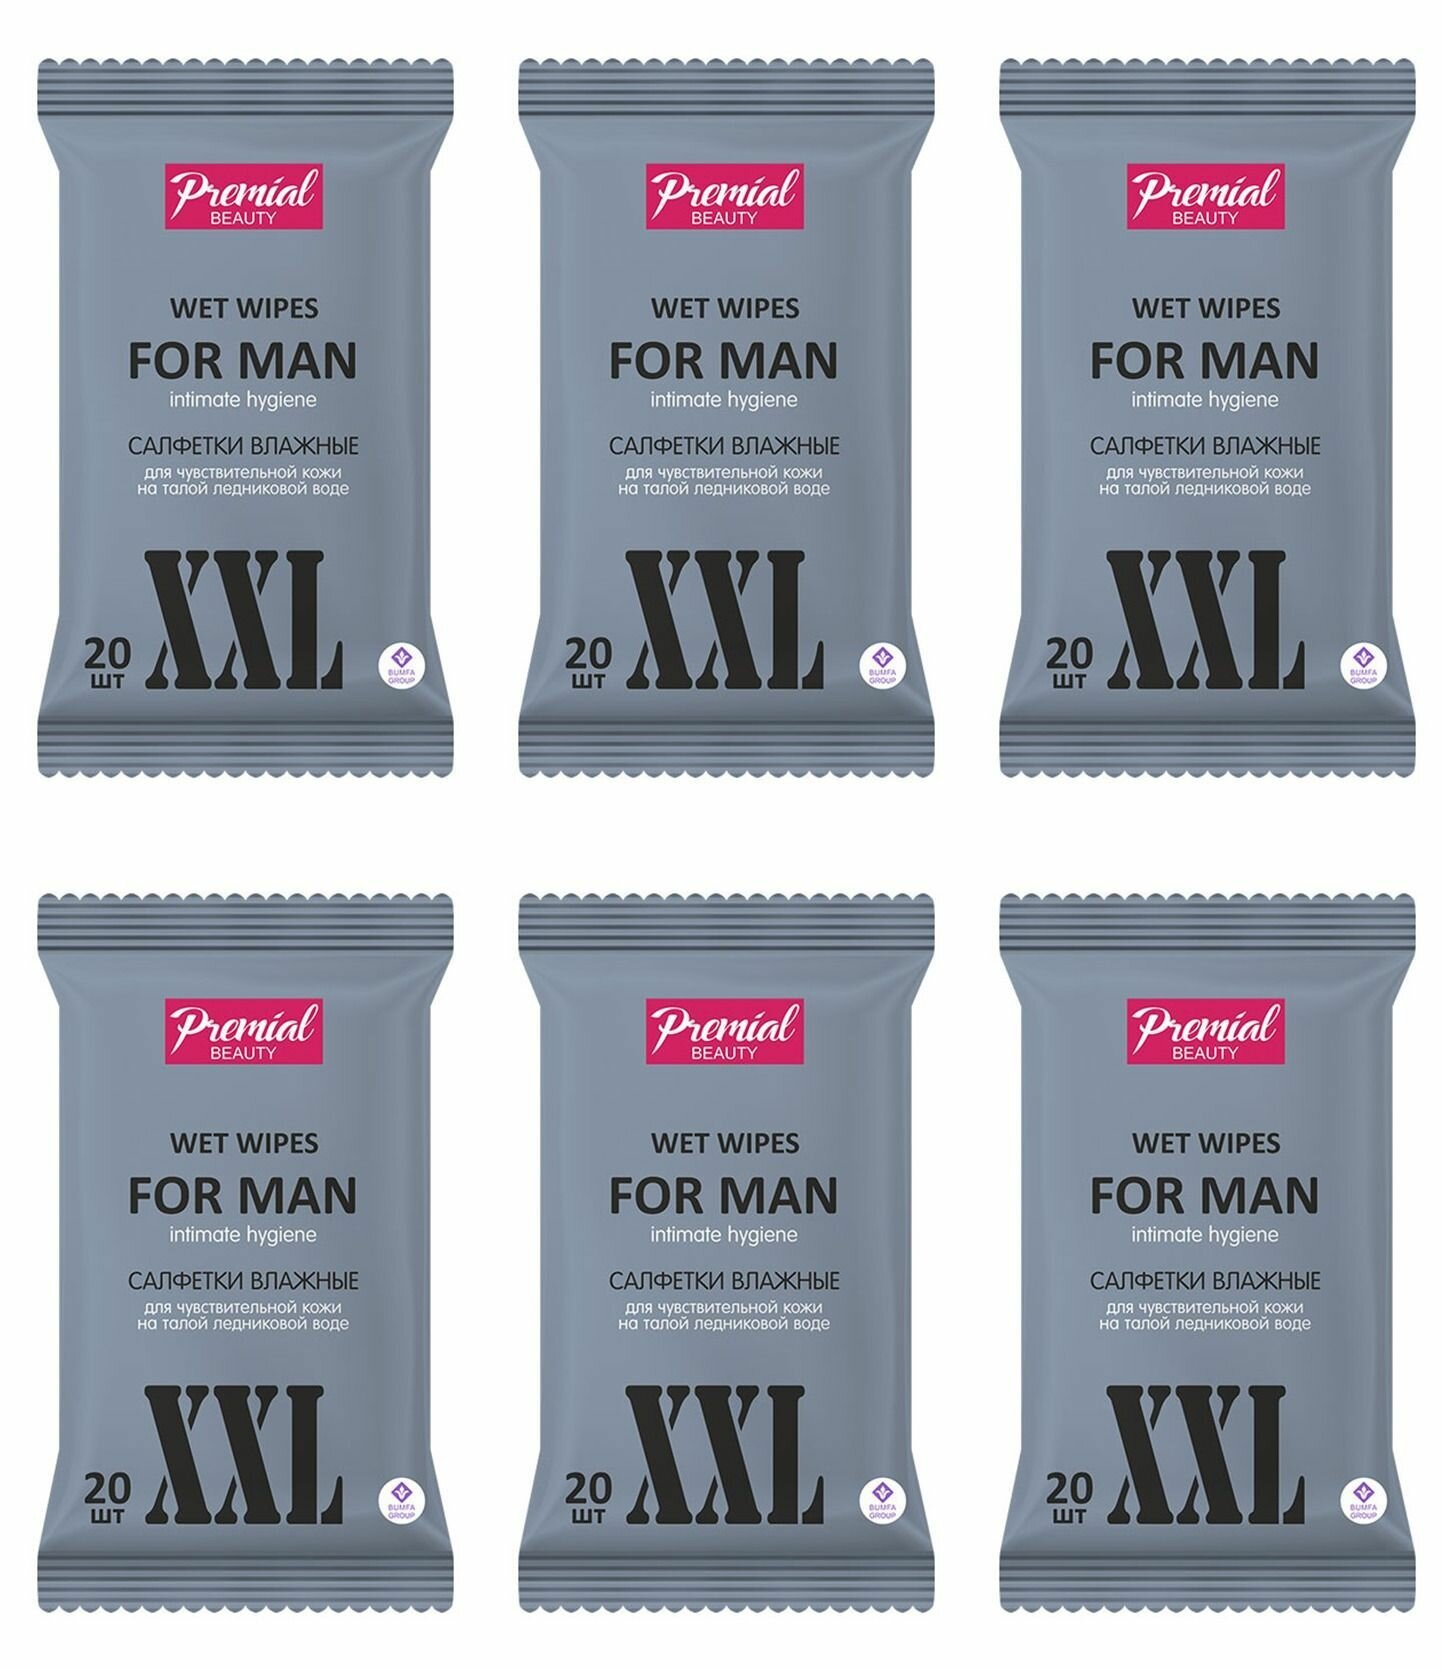 Premial Beauty Салфетки влажные для интимной гигиены, мужские, 20 шт, 6 уп